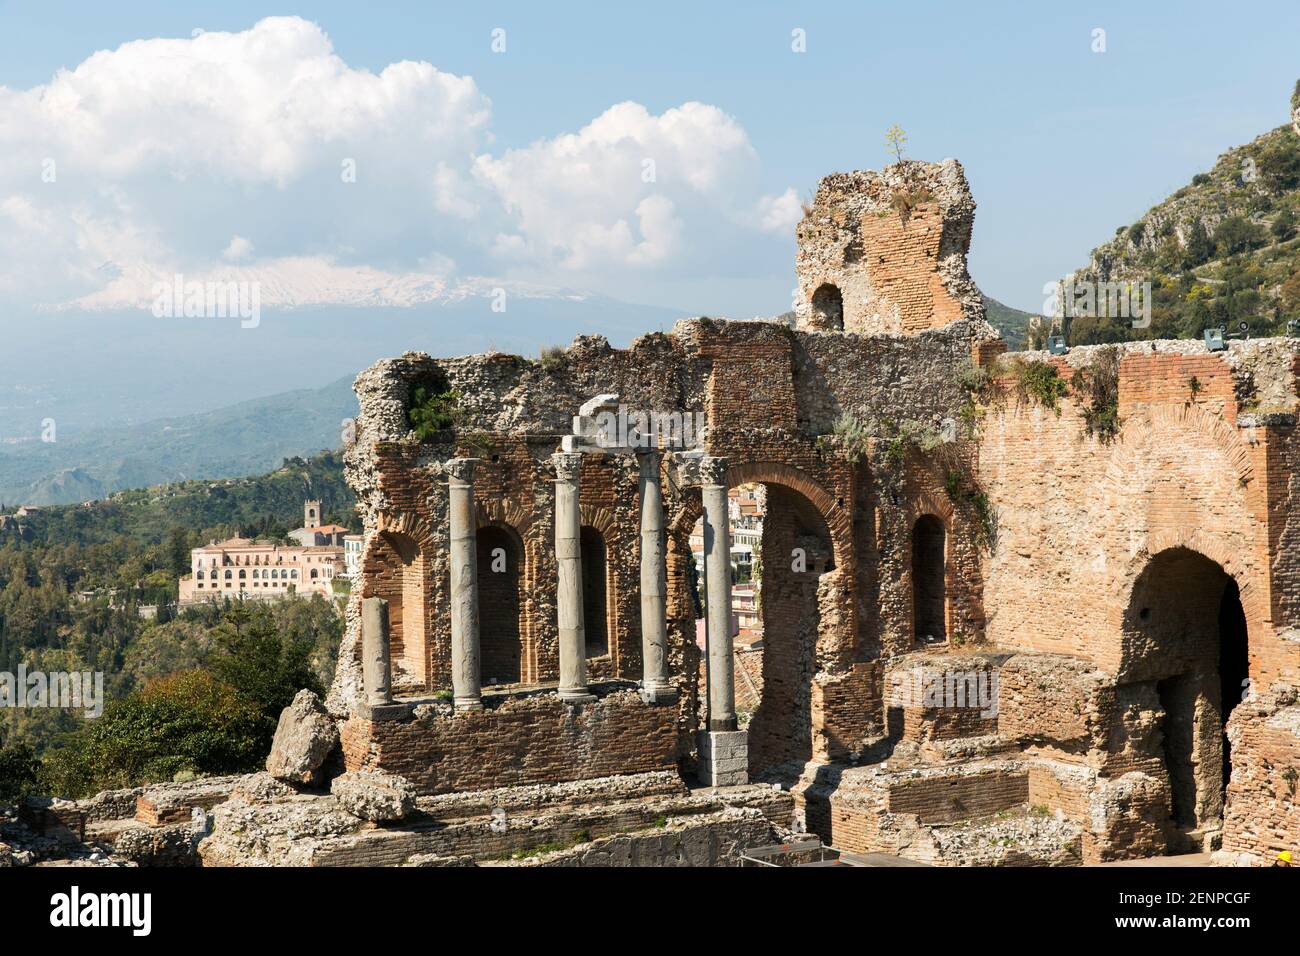 Italia, Sicilia, Taormina, il Teatro Greco, con la città di Taormina e l'Etna sullo sfondo. Foto Stock